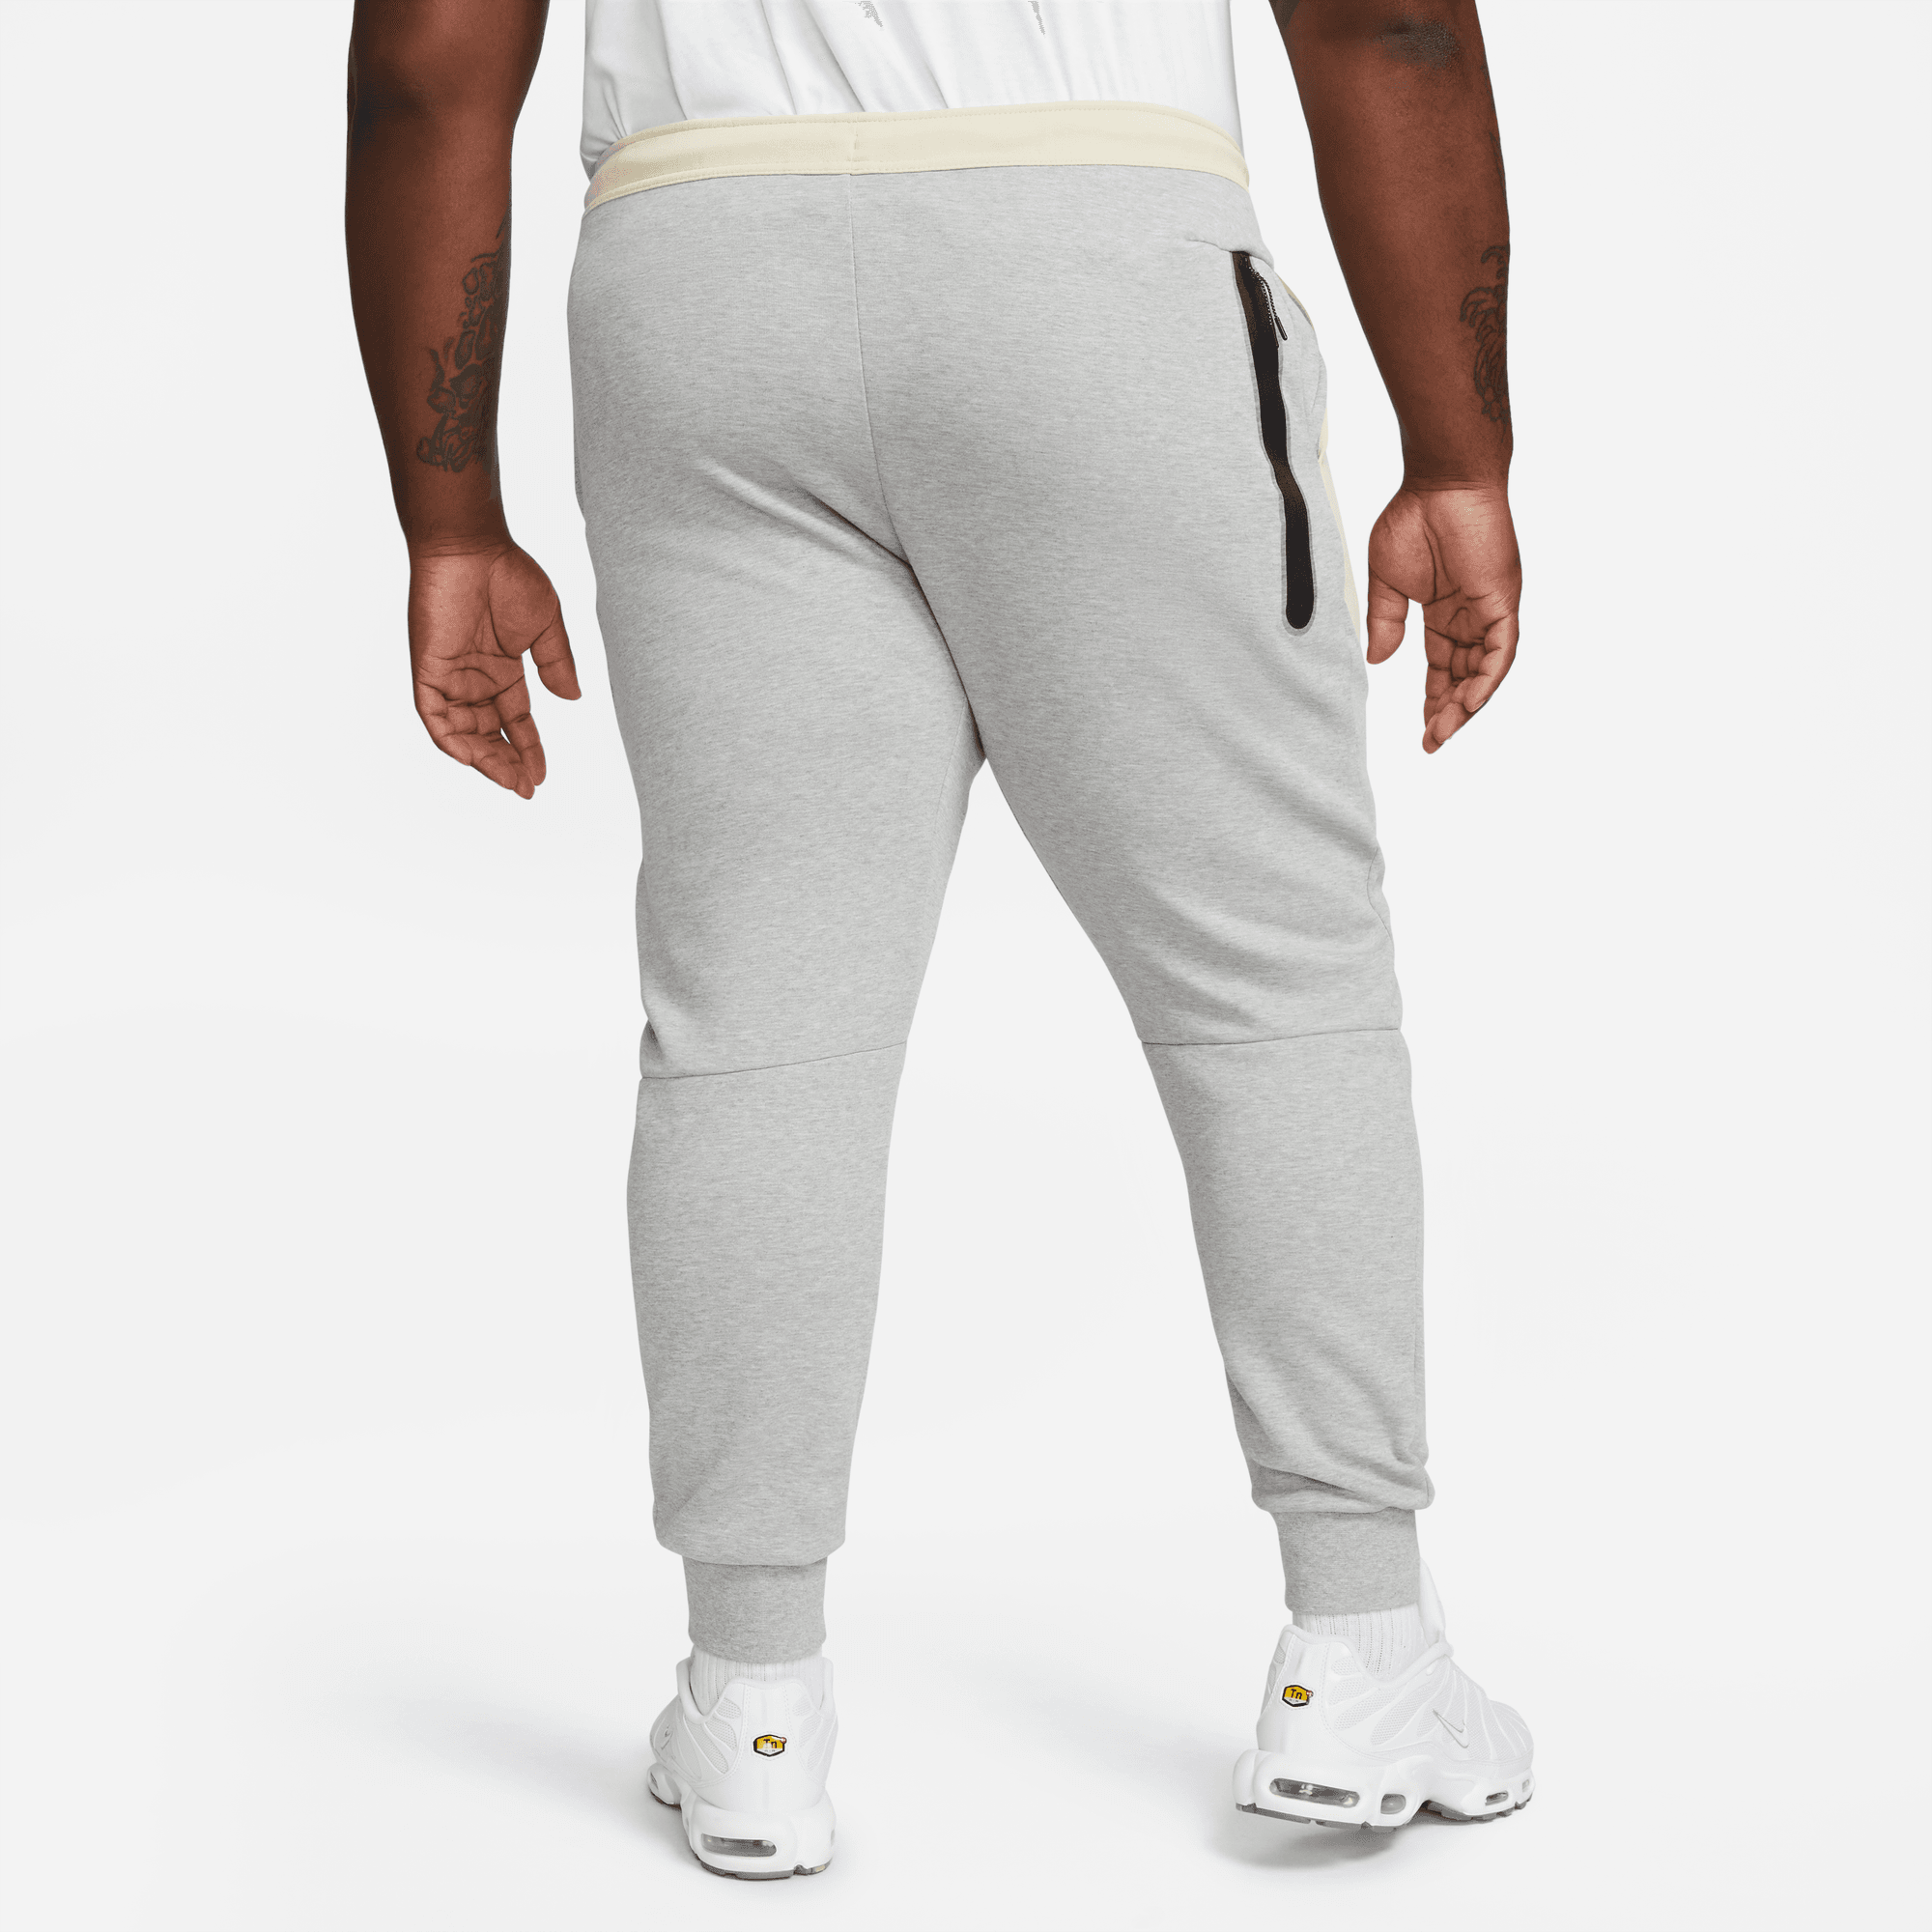 Nike Sportswear Tech Fleece Grey Colorblock Joggers - Puffer Reds